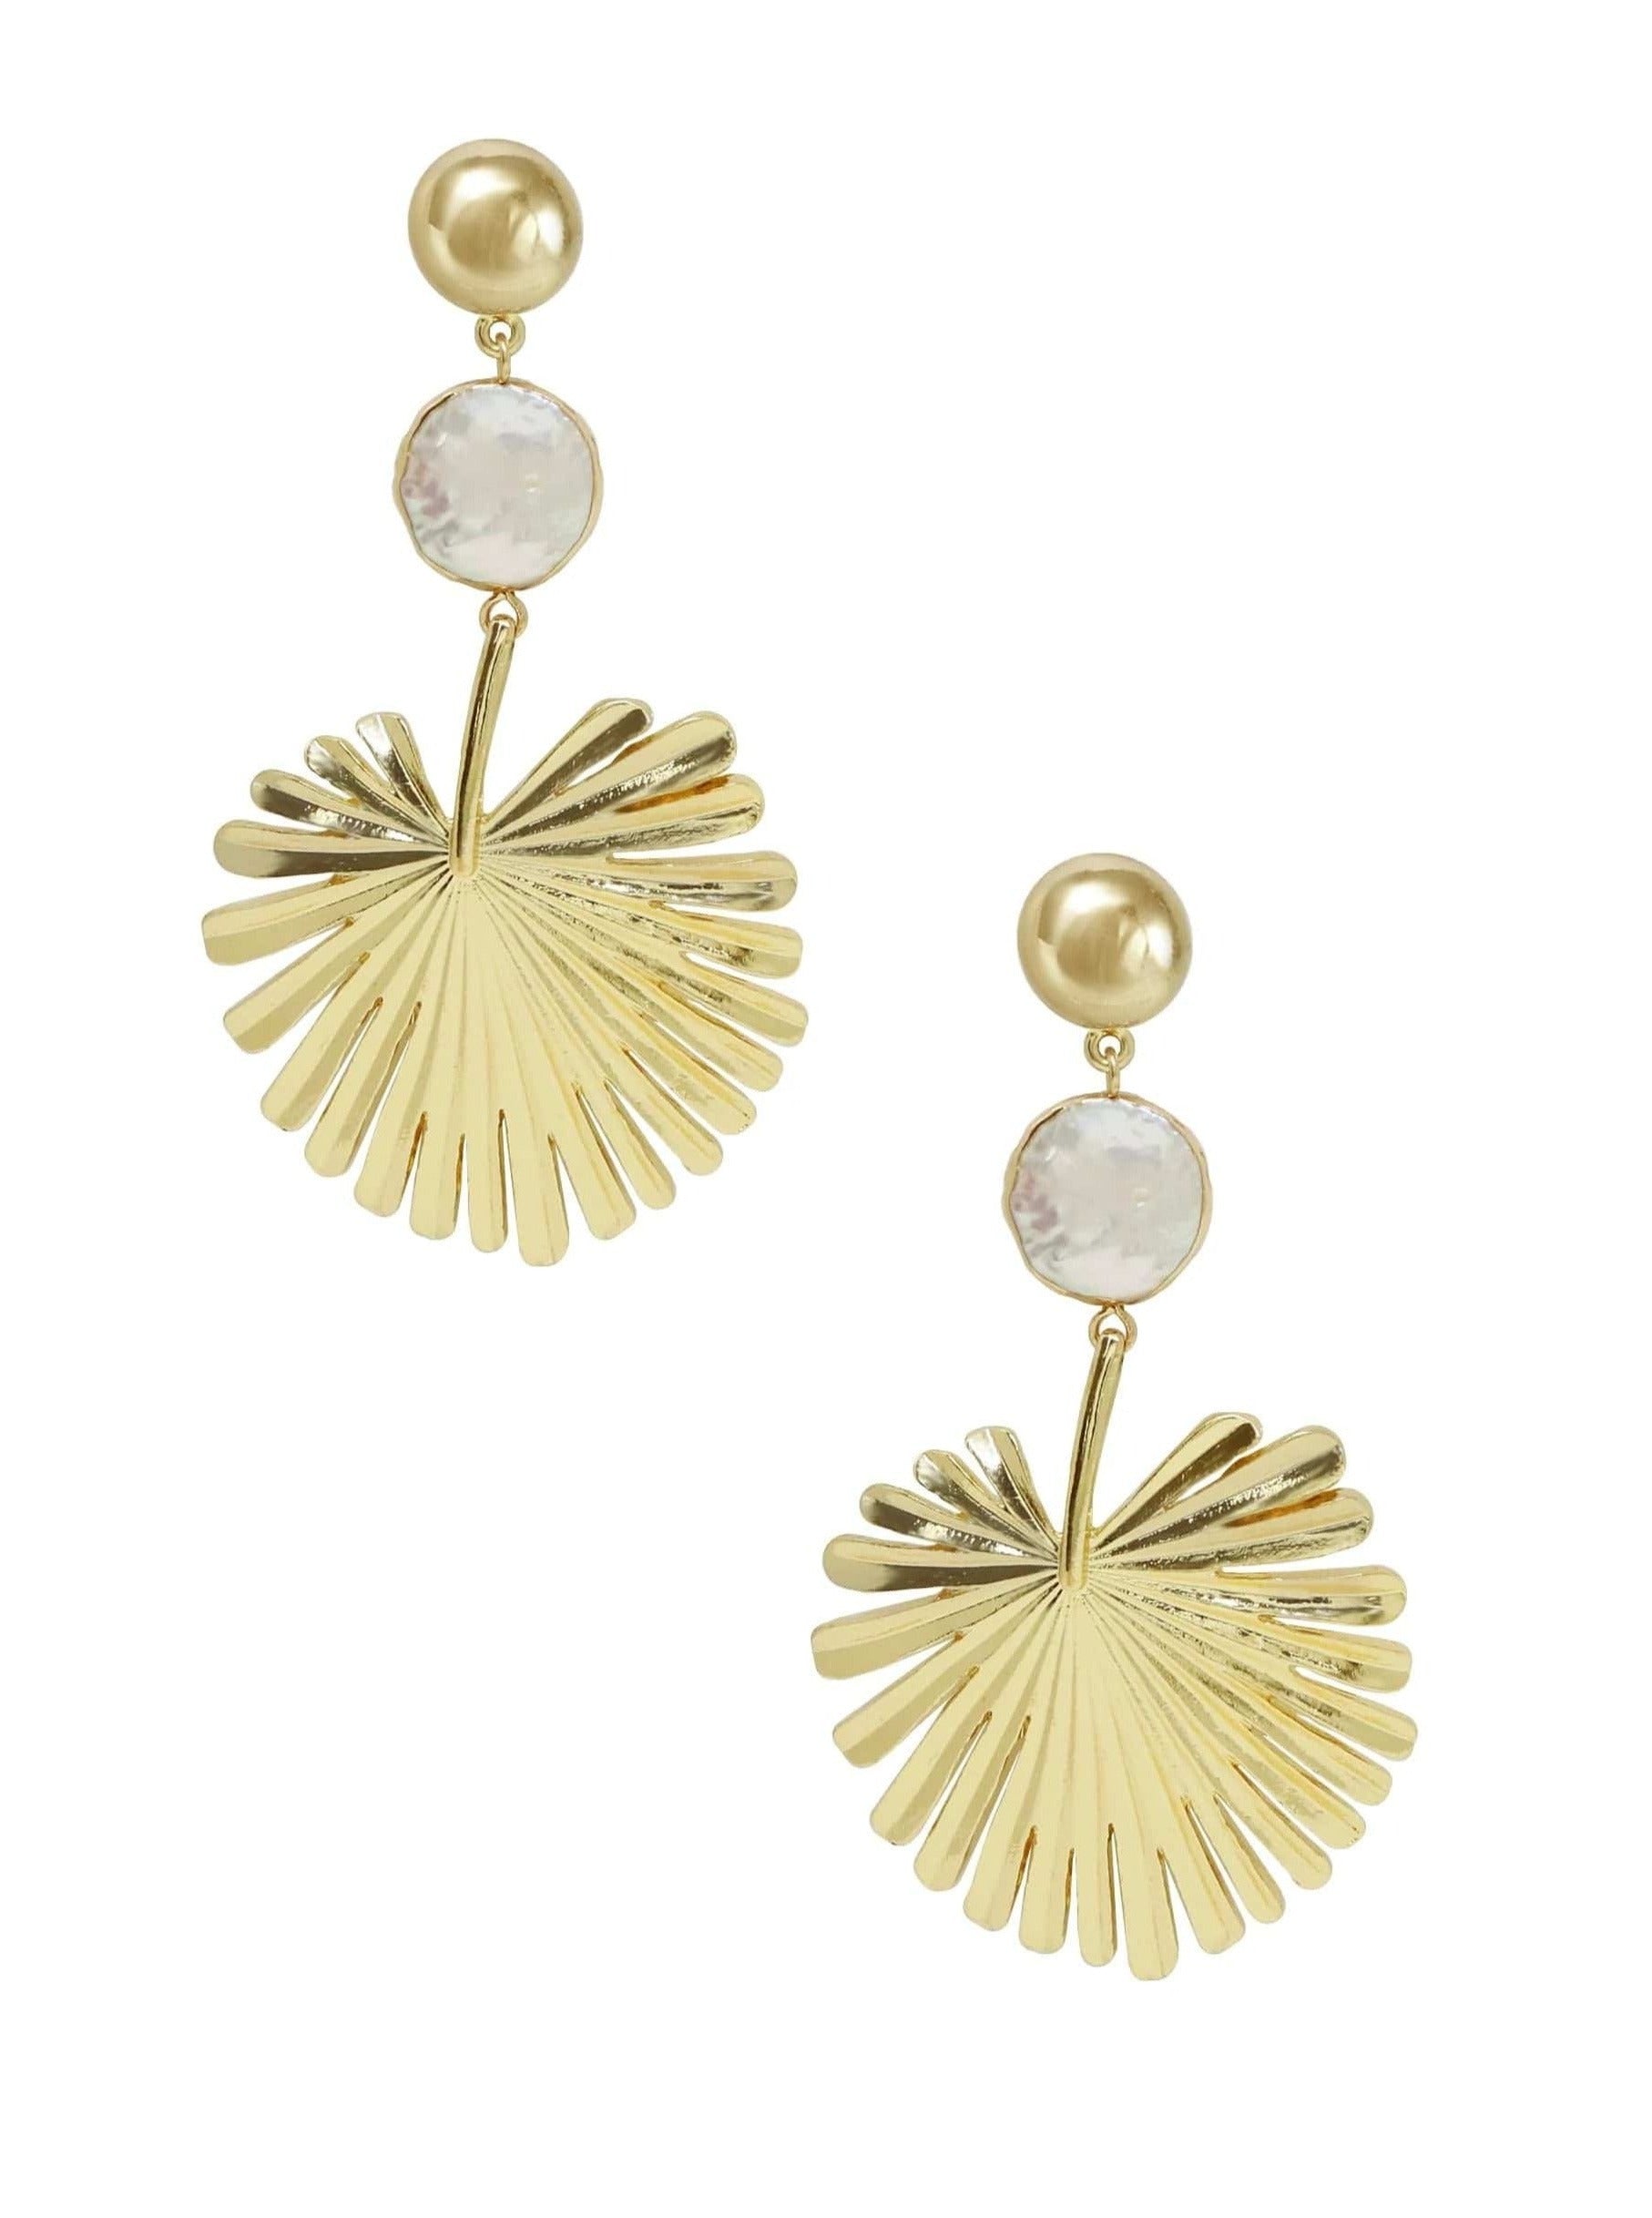 ettika earrings 18k Palm Leaf with Pearl in Gold // EARRINGS